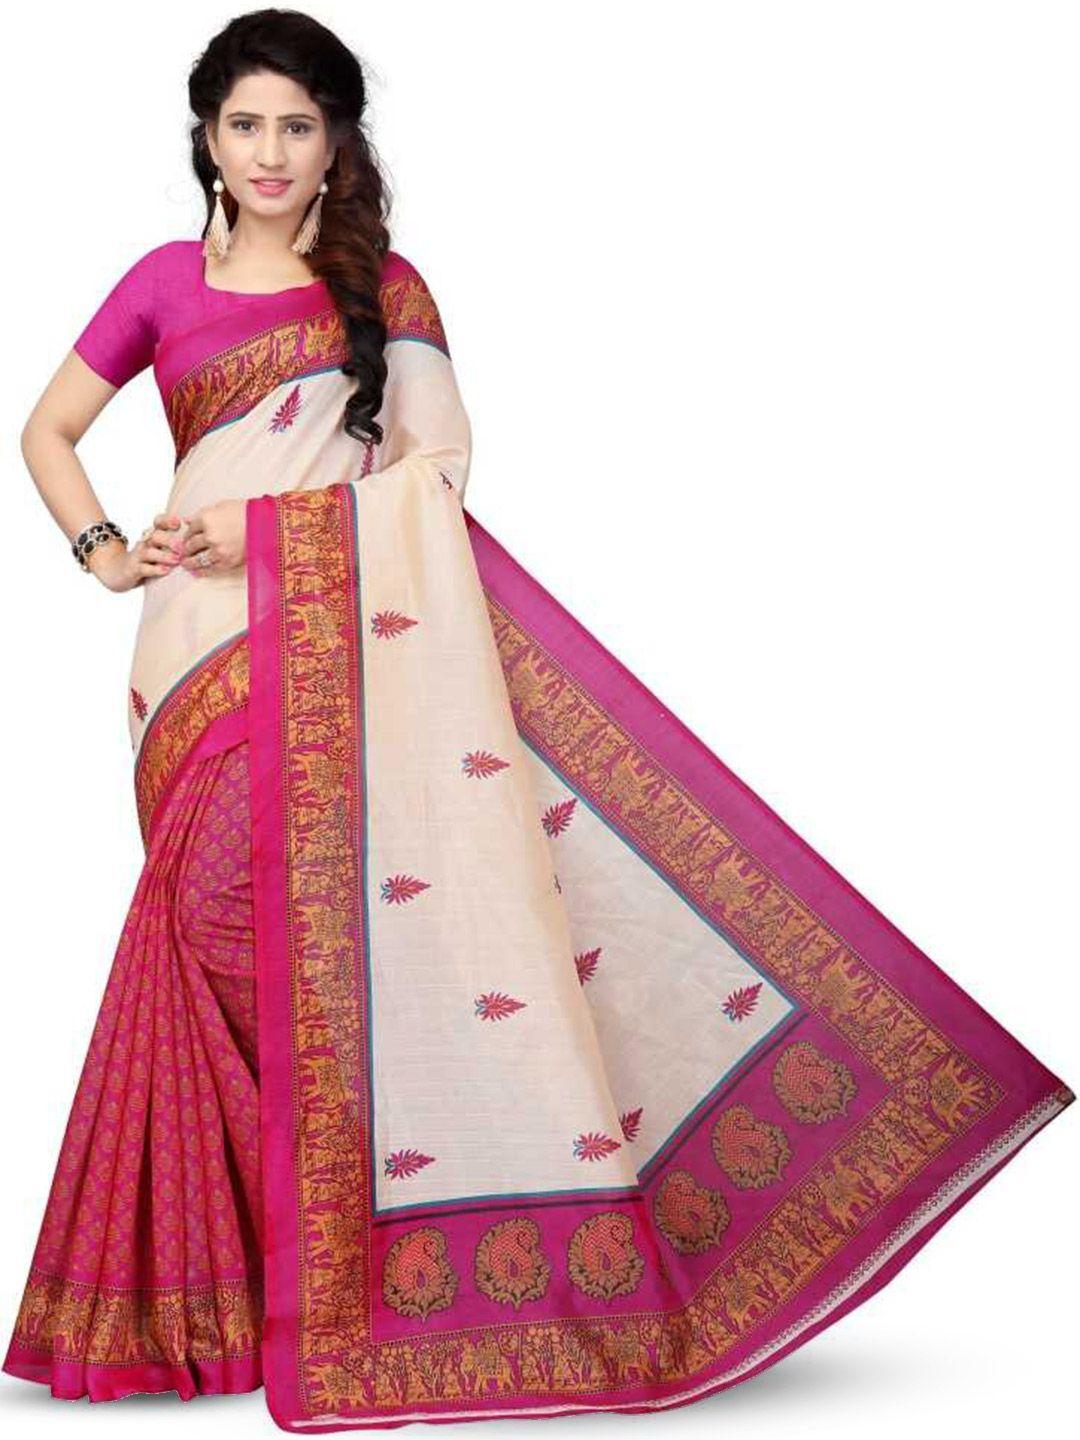 mitera cream & pink ethnic motifs printed art silk banarasi saree